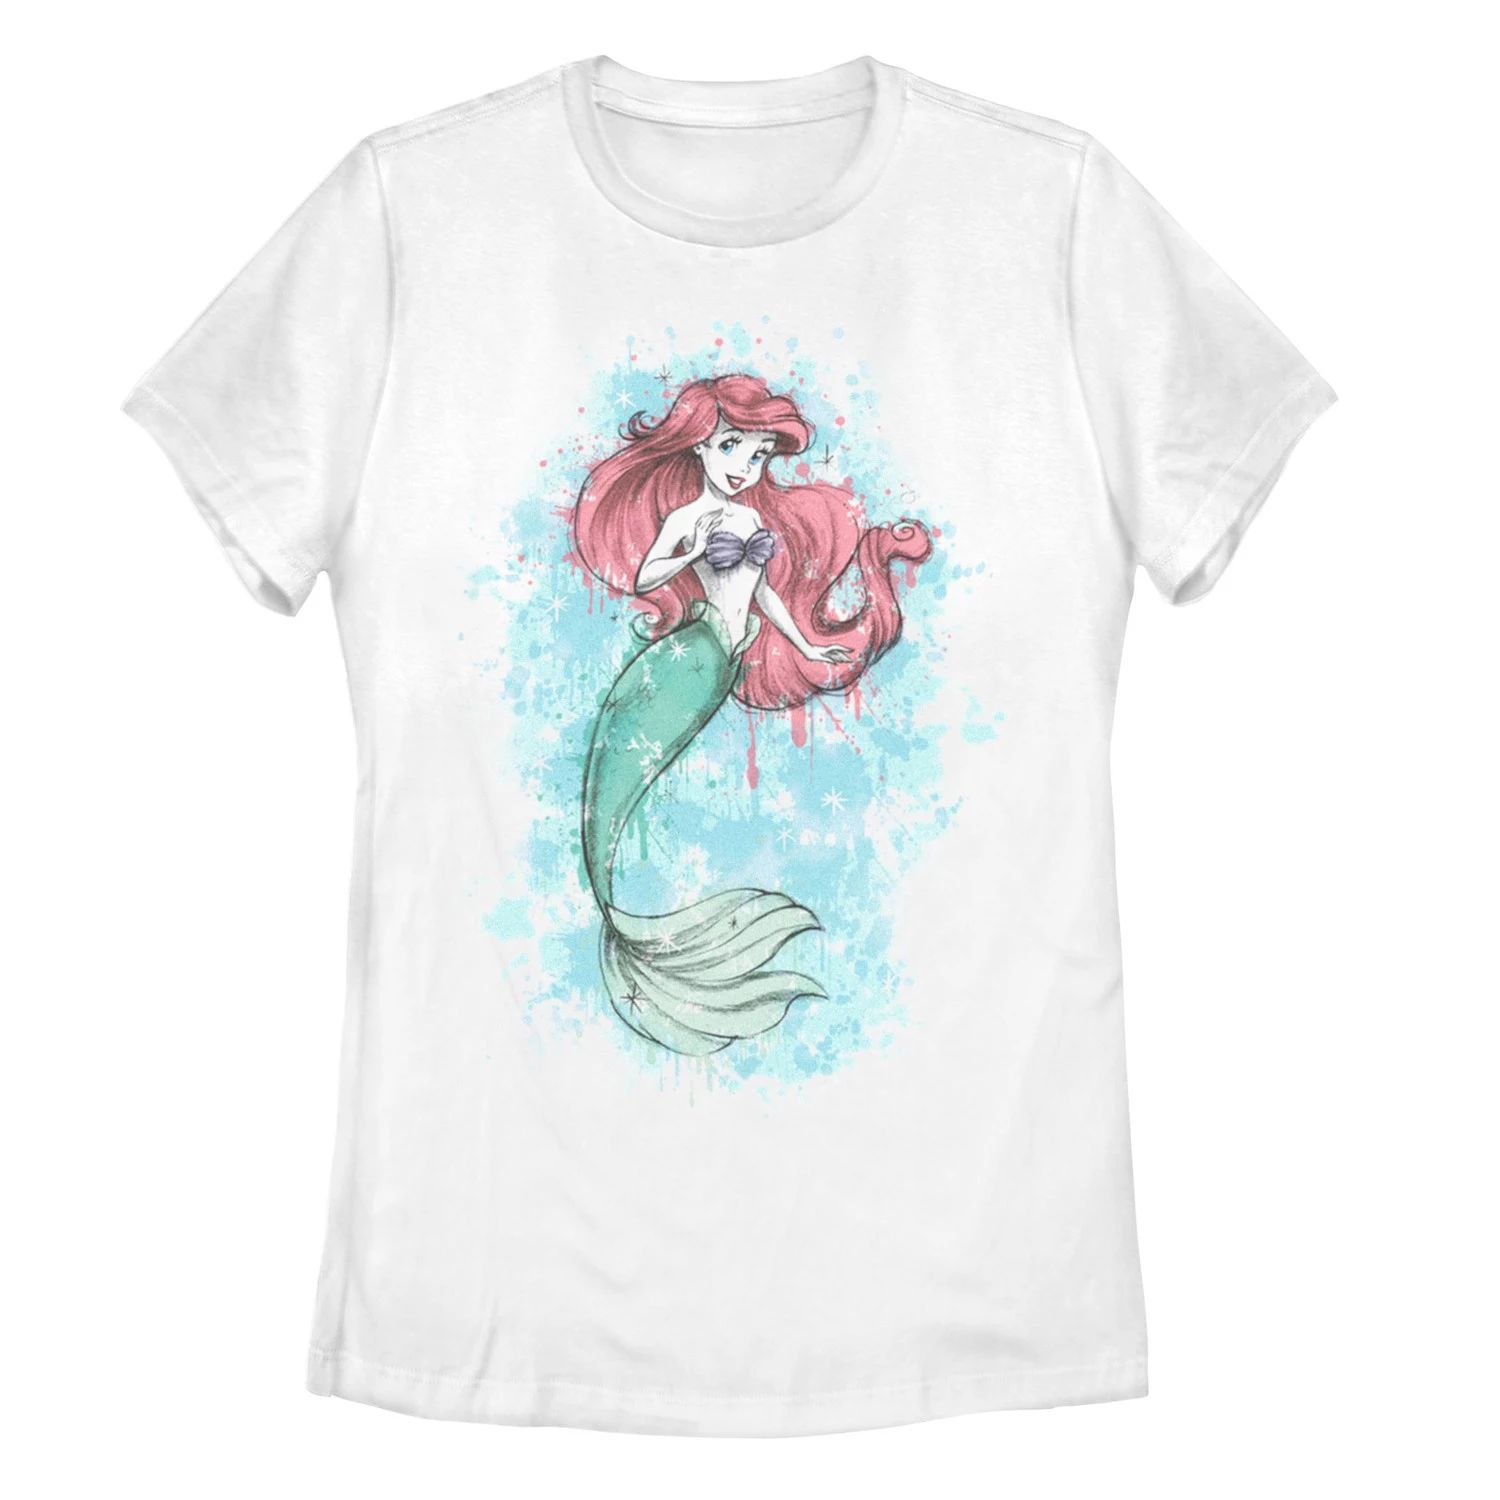 Детская футболка с брызгами краски «Принцесса Диснея, Русалочка Ариэль» Licensed Character фото